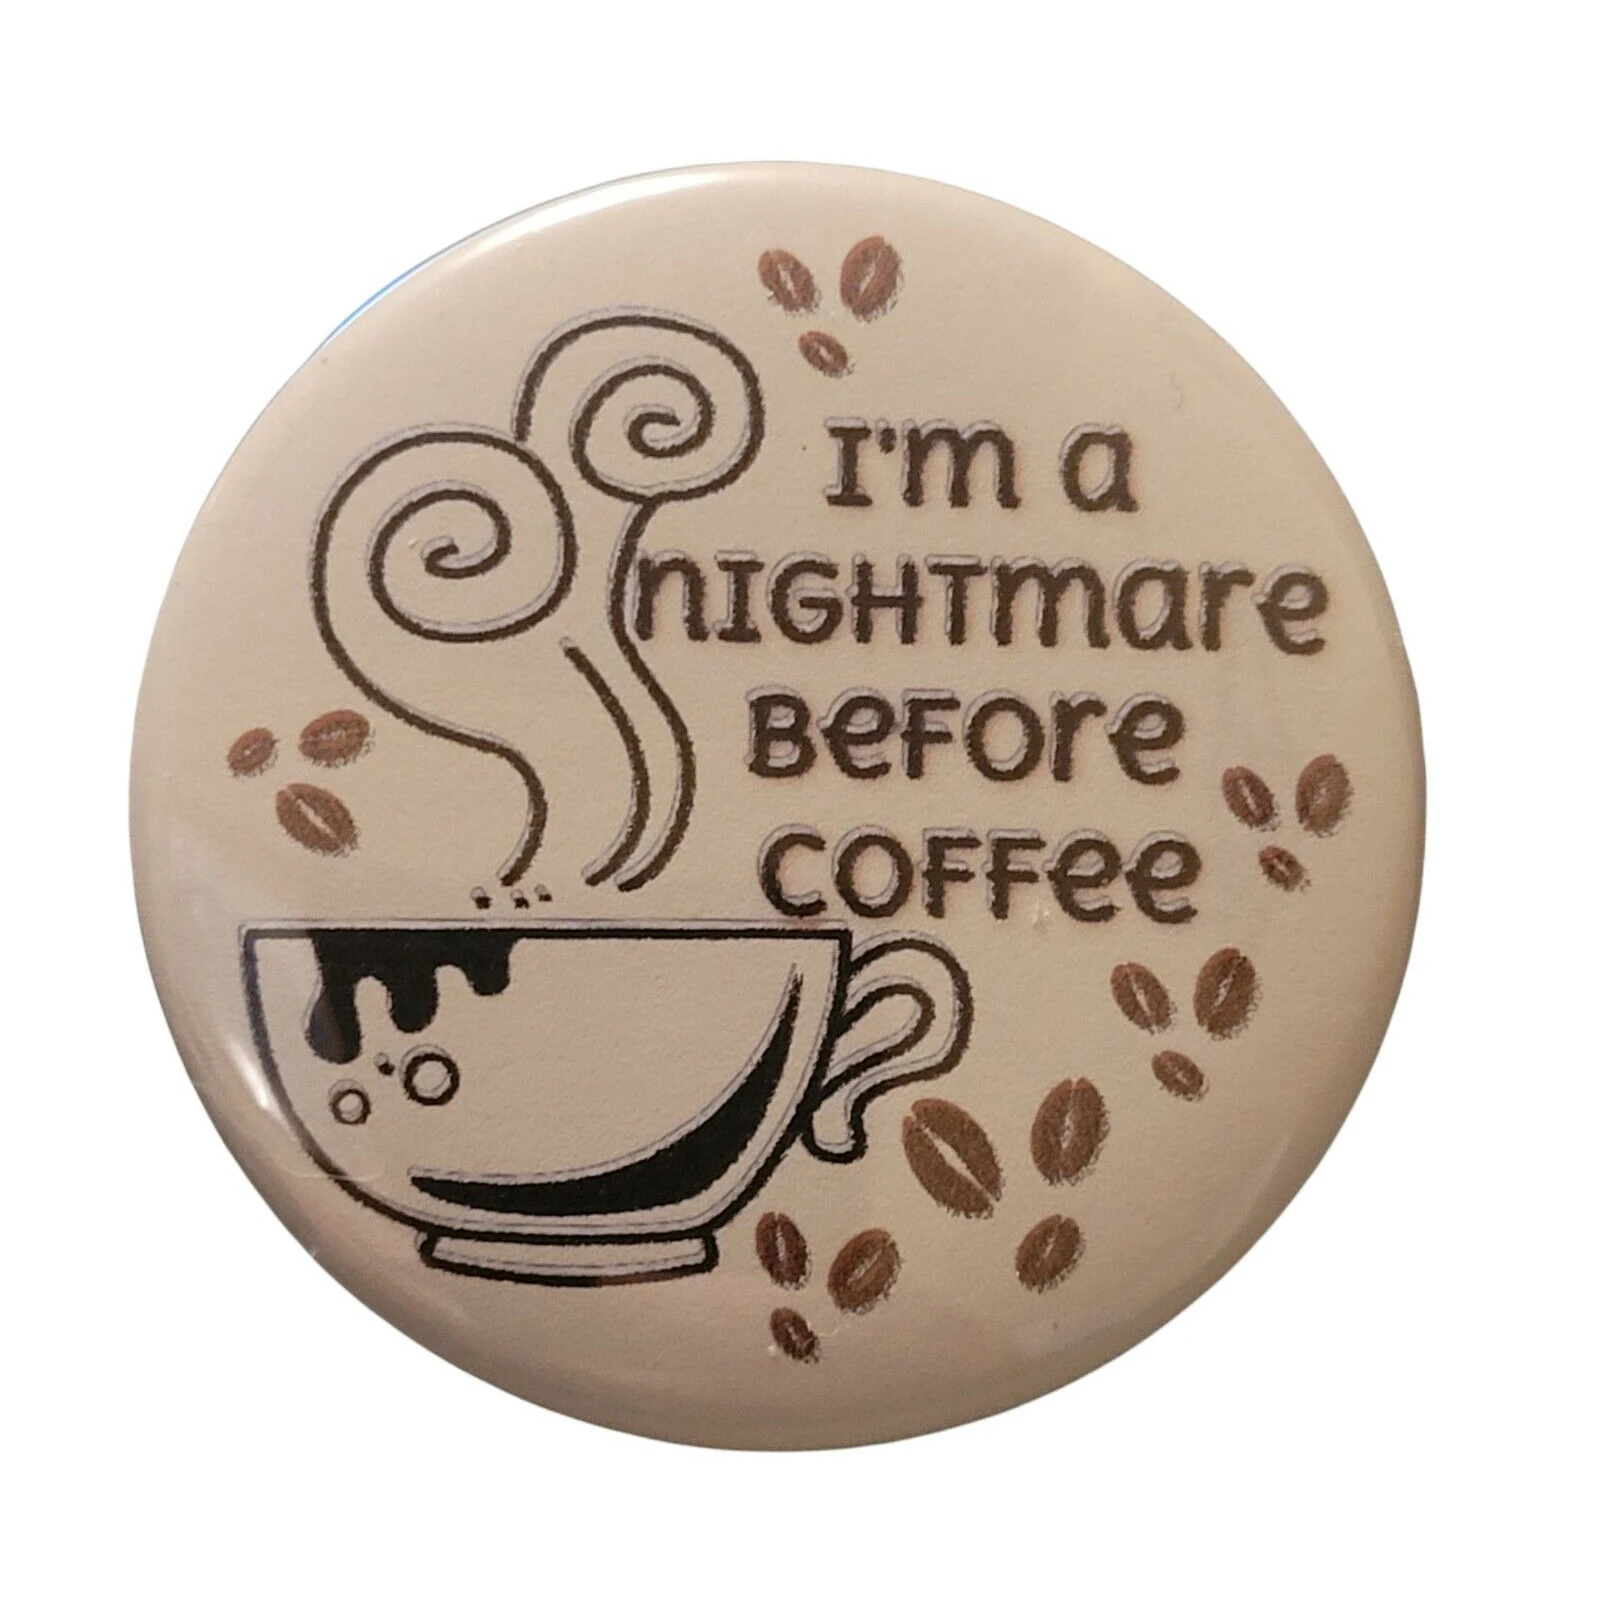 

Булавка для кнопки Pinback «Я кошмар перед кофе», юмористический юмор